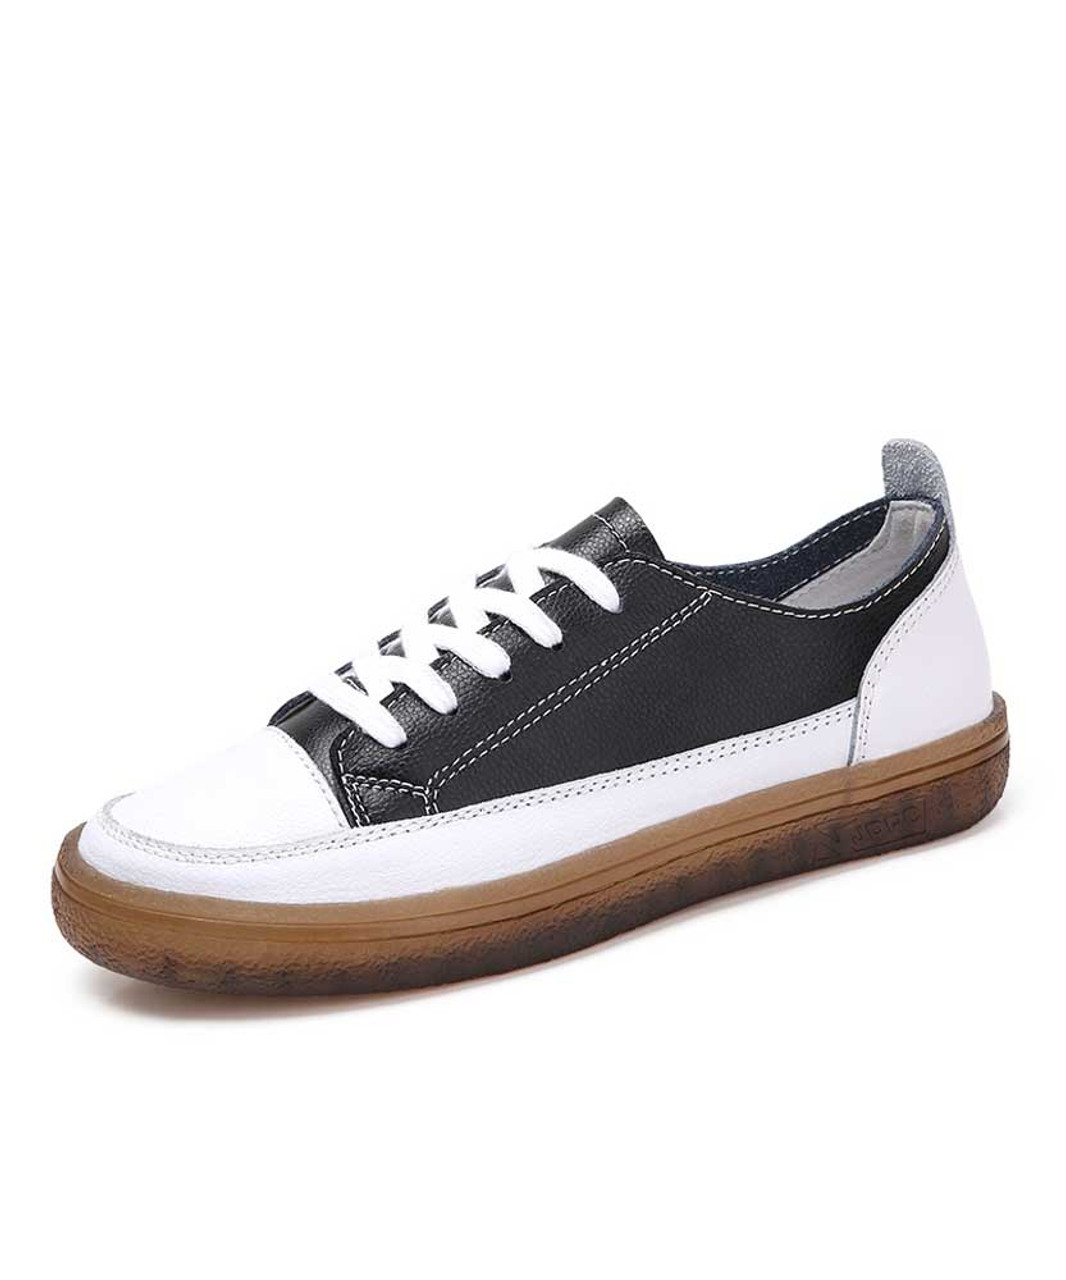 Black white sewed split leather shoe sneaker | Womens shoe sneakers ...